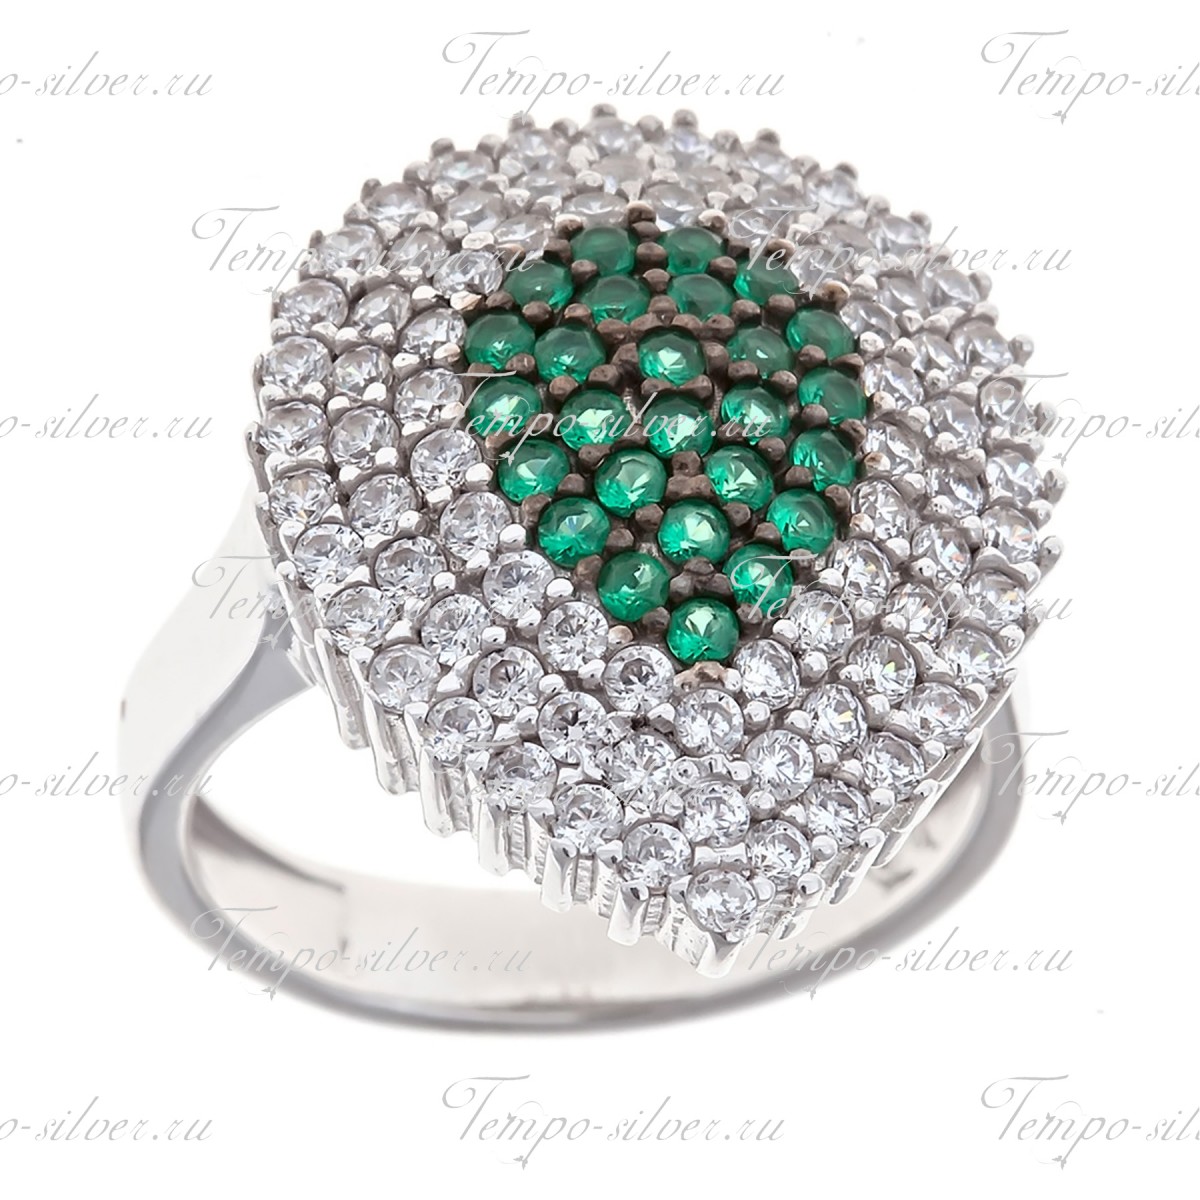 Кольцо из серебра каплевидной модели с серединкой из зеленых камней